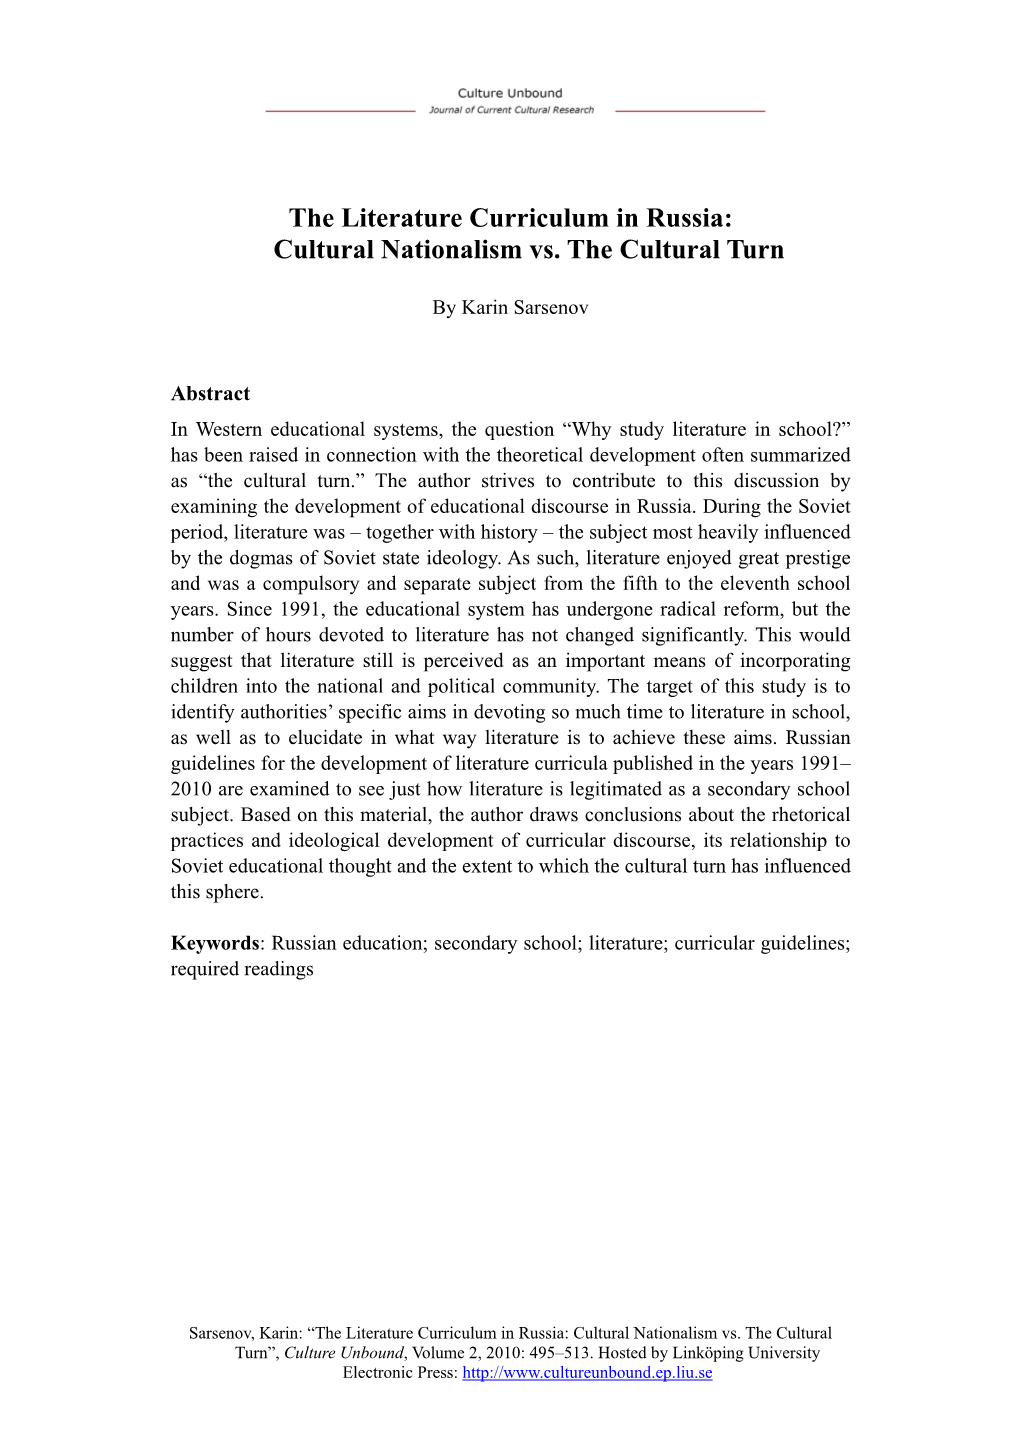 The Literature Curriculum in Russia: Cultural Nationalism Vs. the Cultural Turn